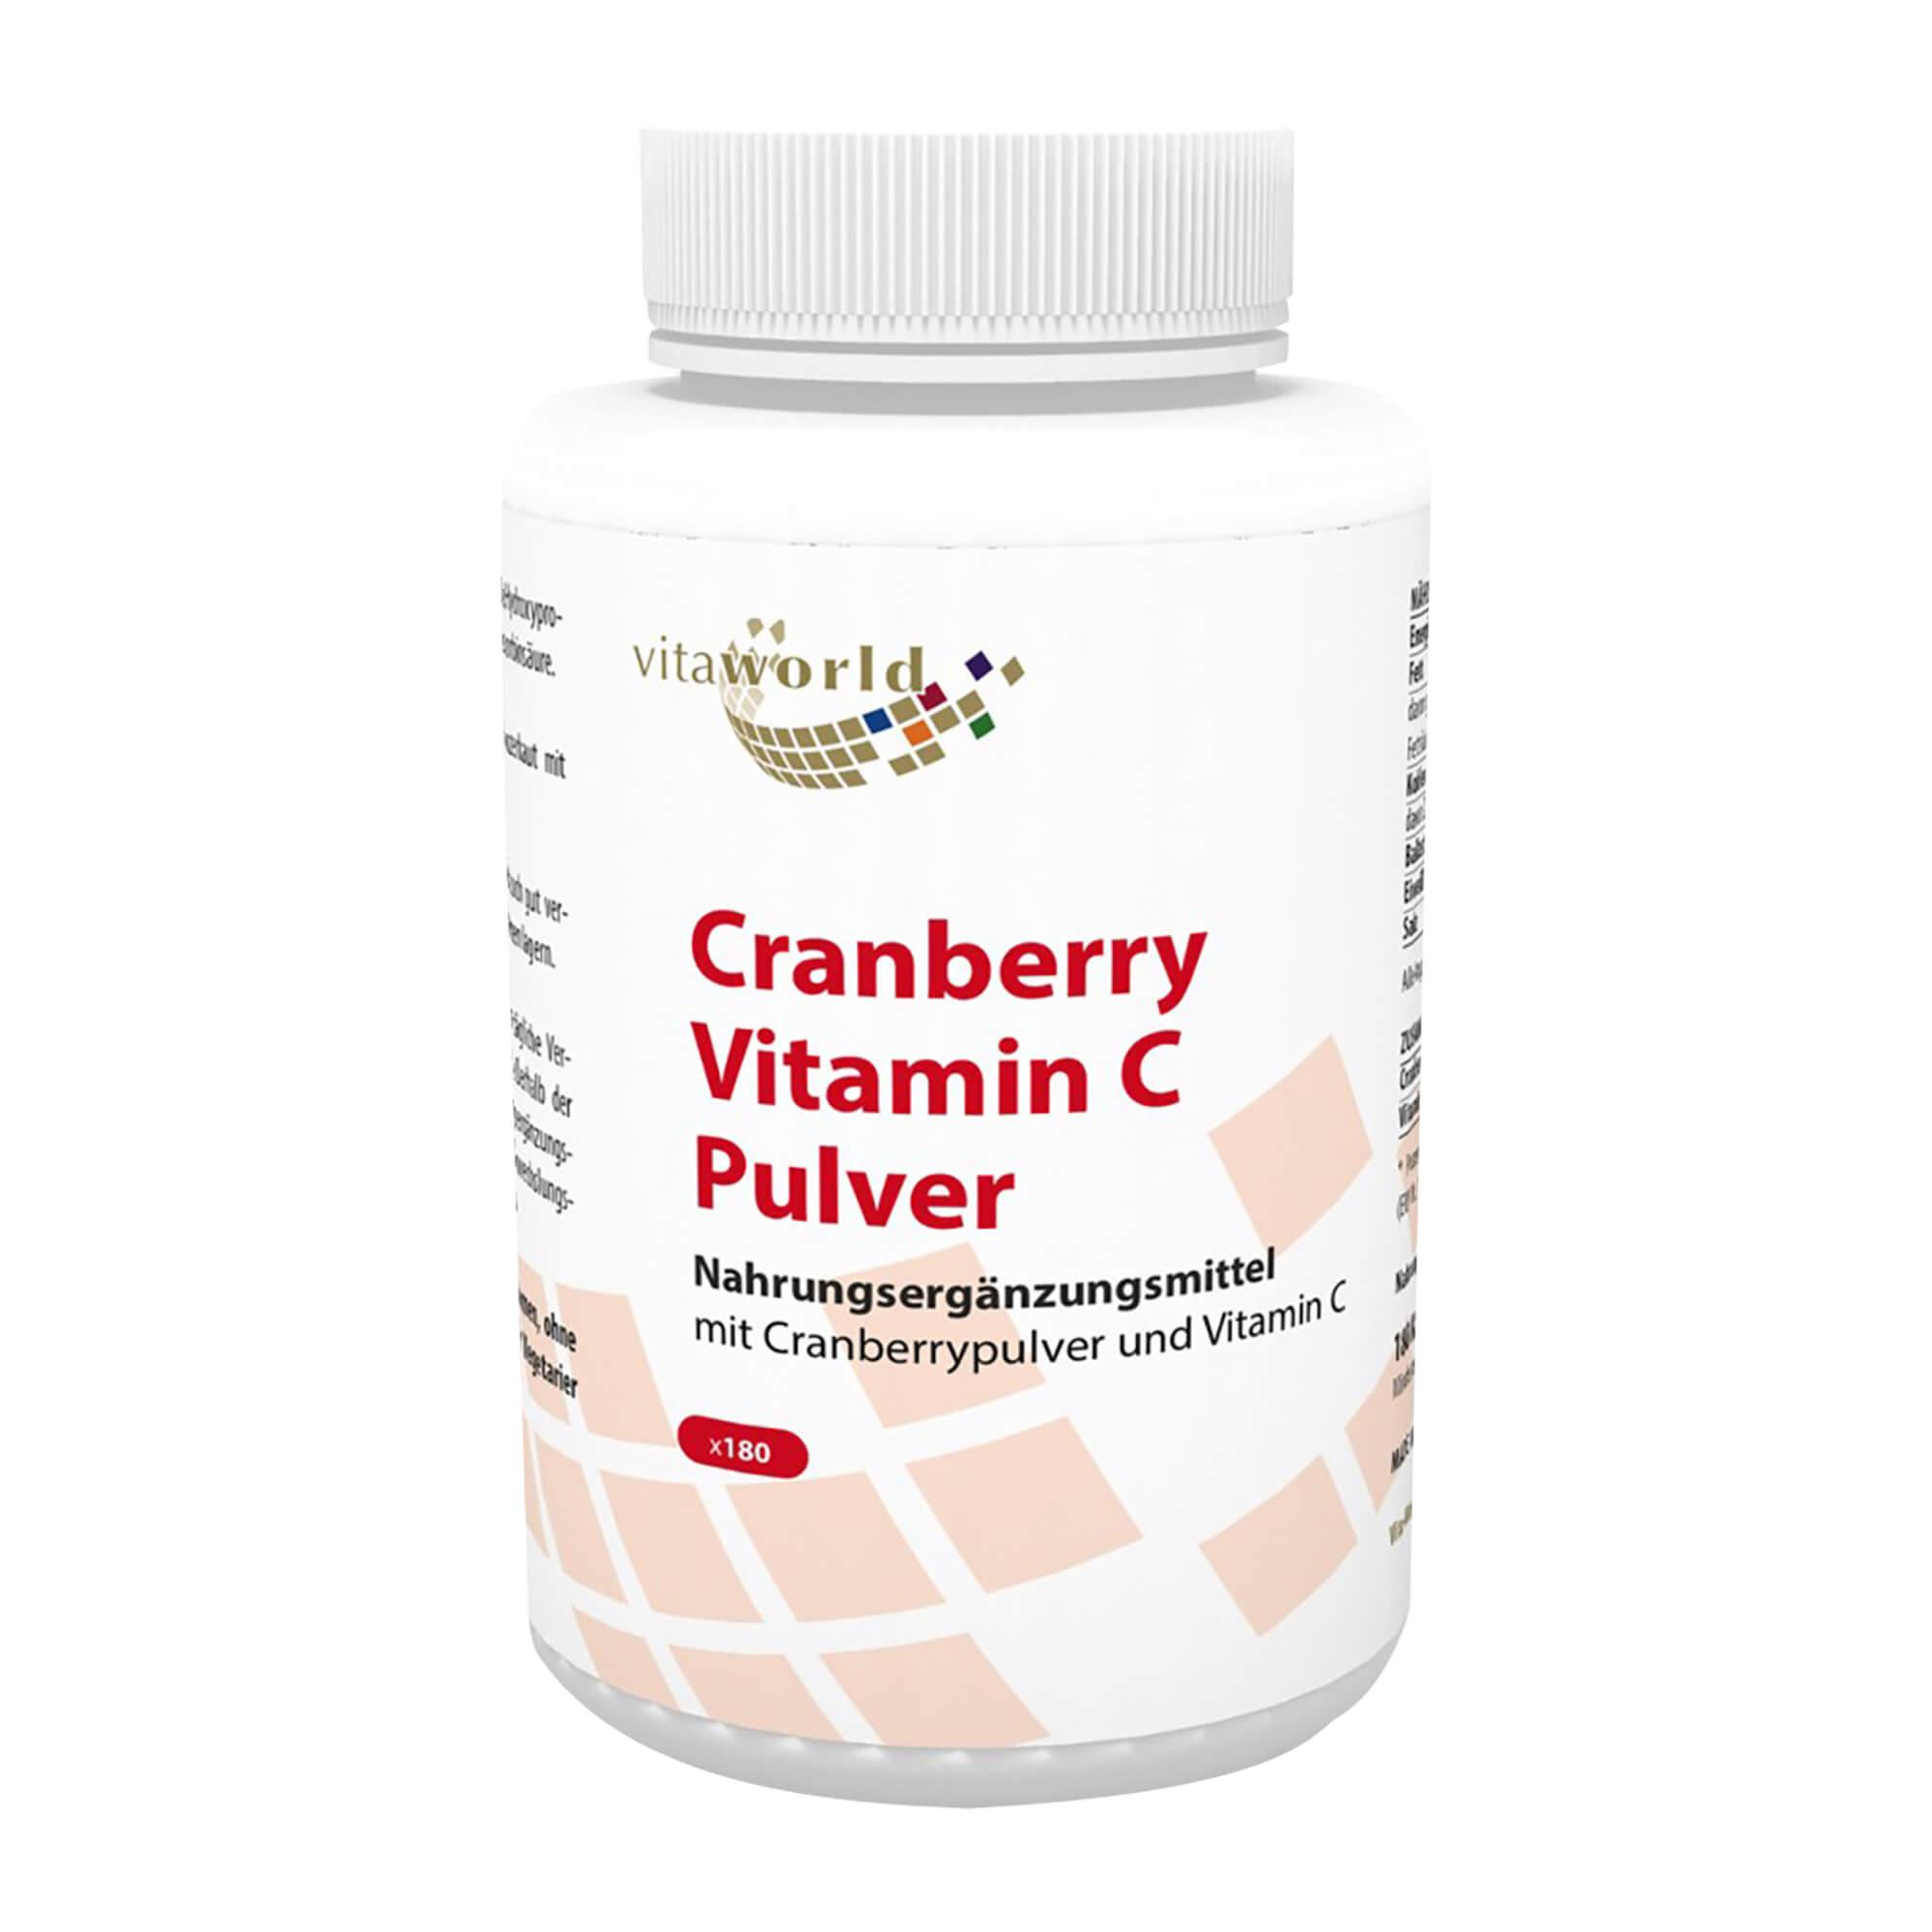 Nahrungsergänzungsmittel mit Cranberrypulver und Vitamin C.